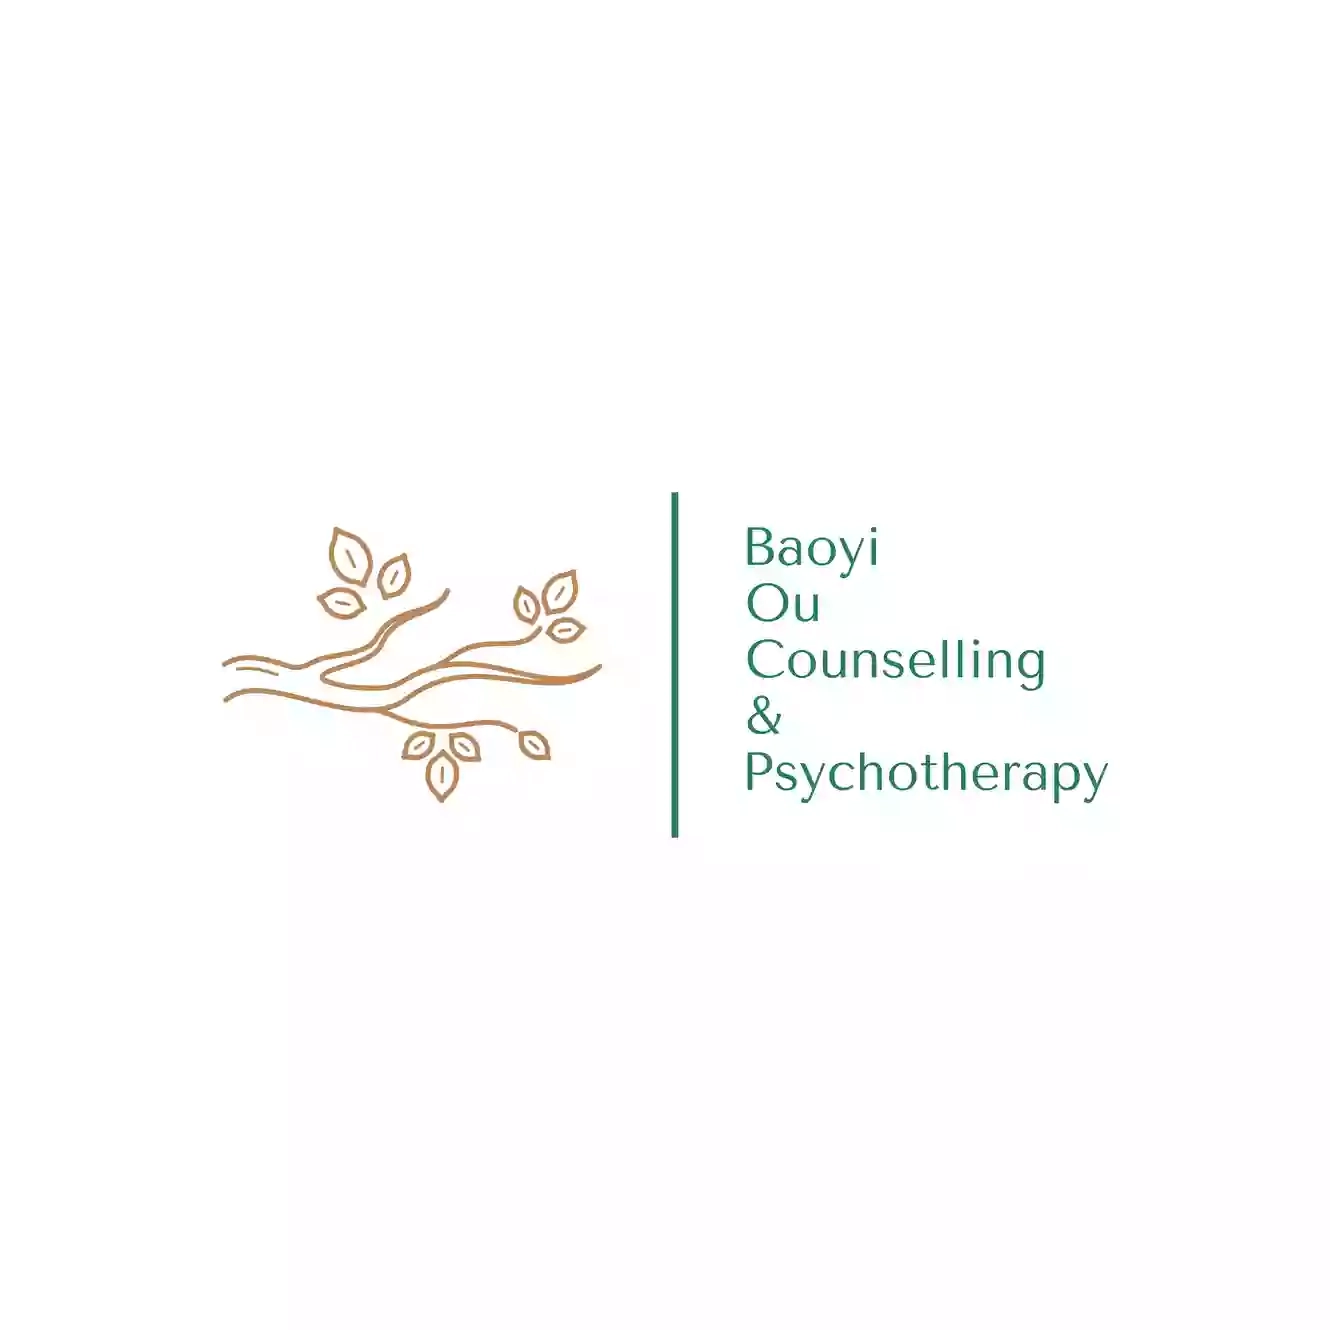 Baoyi Ou Counselling & Psychotherapy